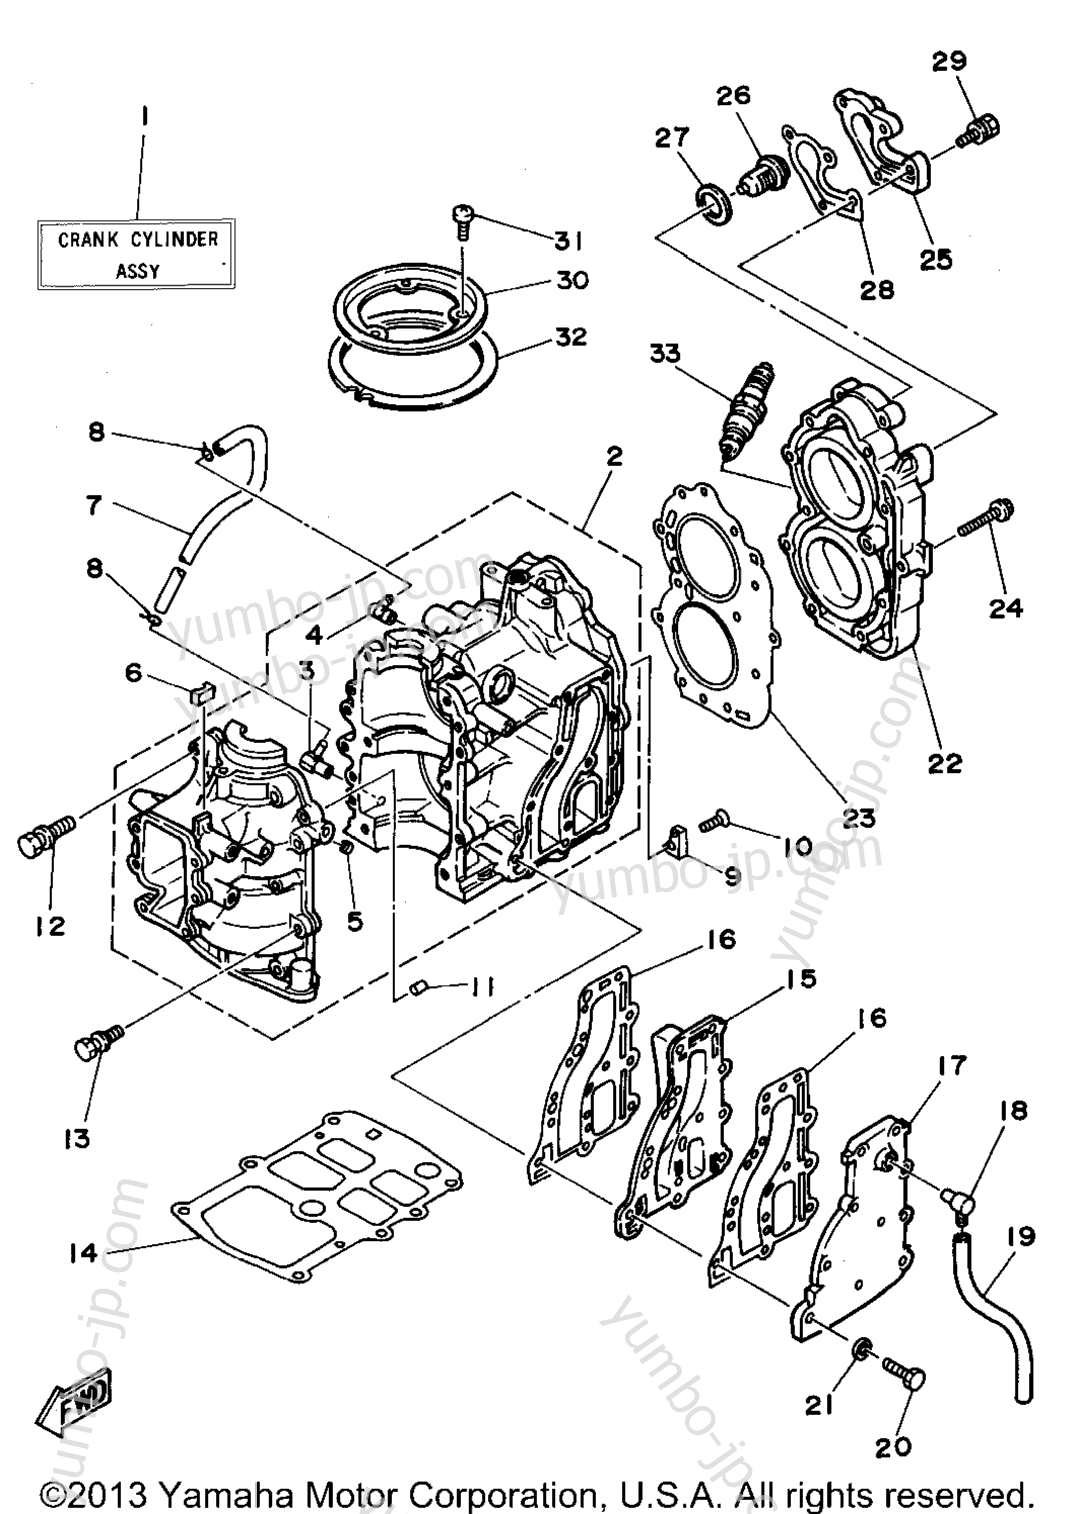 Cylinder Crankcase для лодочных моторов YAMAHA 15ELHS 1994 г.